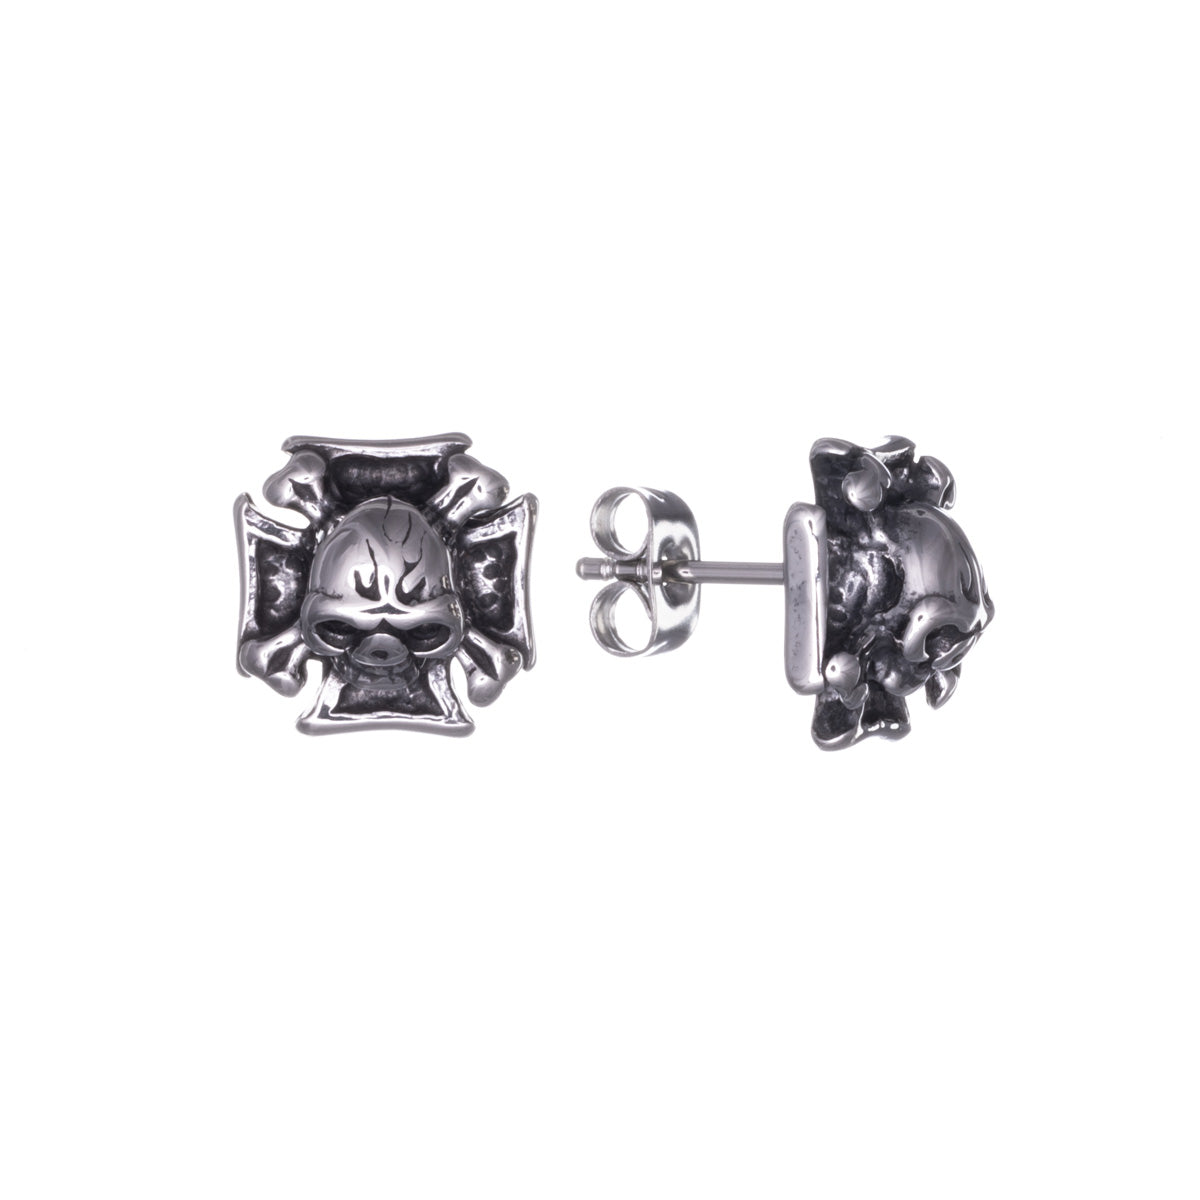 Iron cross skull earrings (Steel 316L)